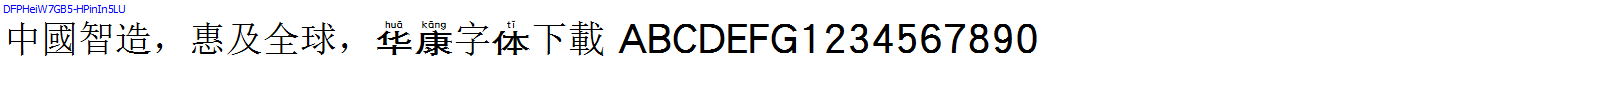 華康字體DFPHeiW7GB5-HPinIn5LU.TTF